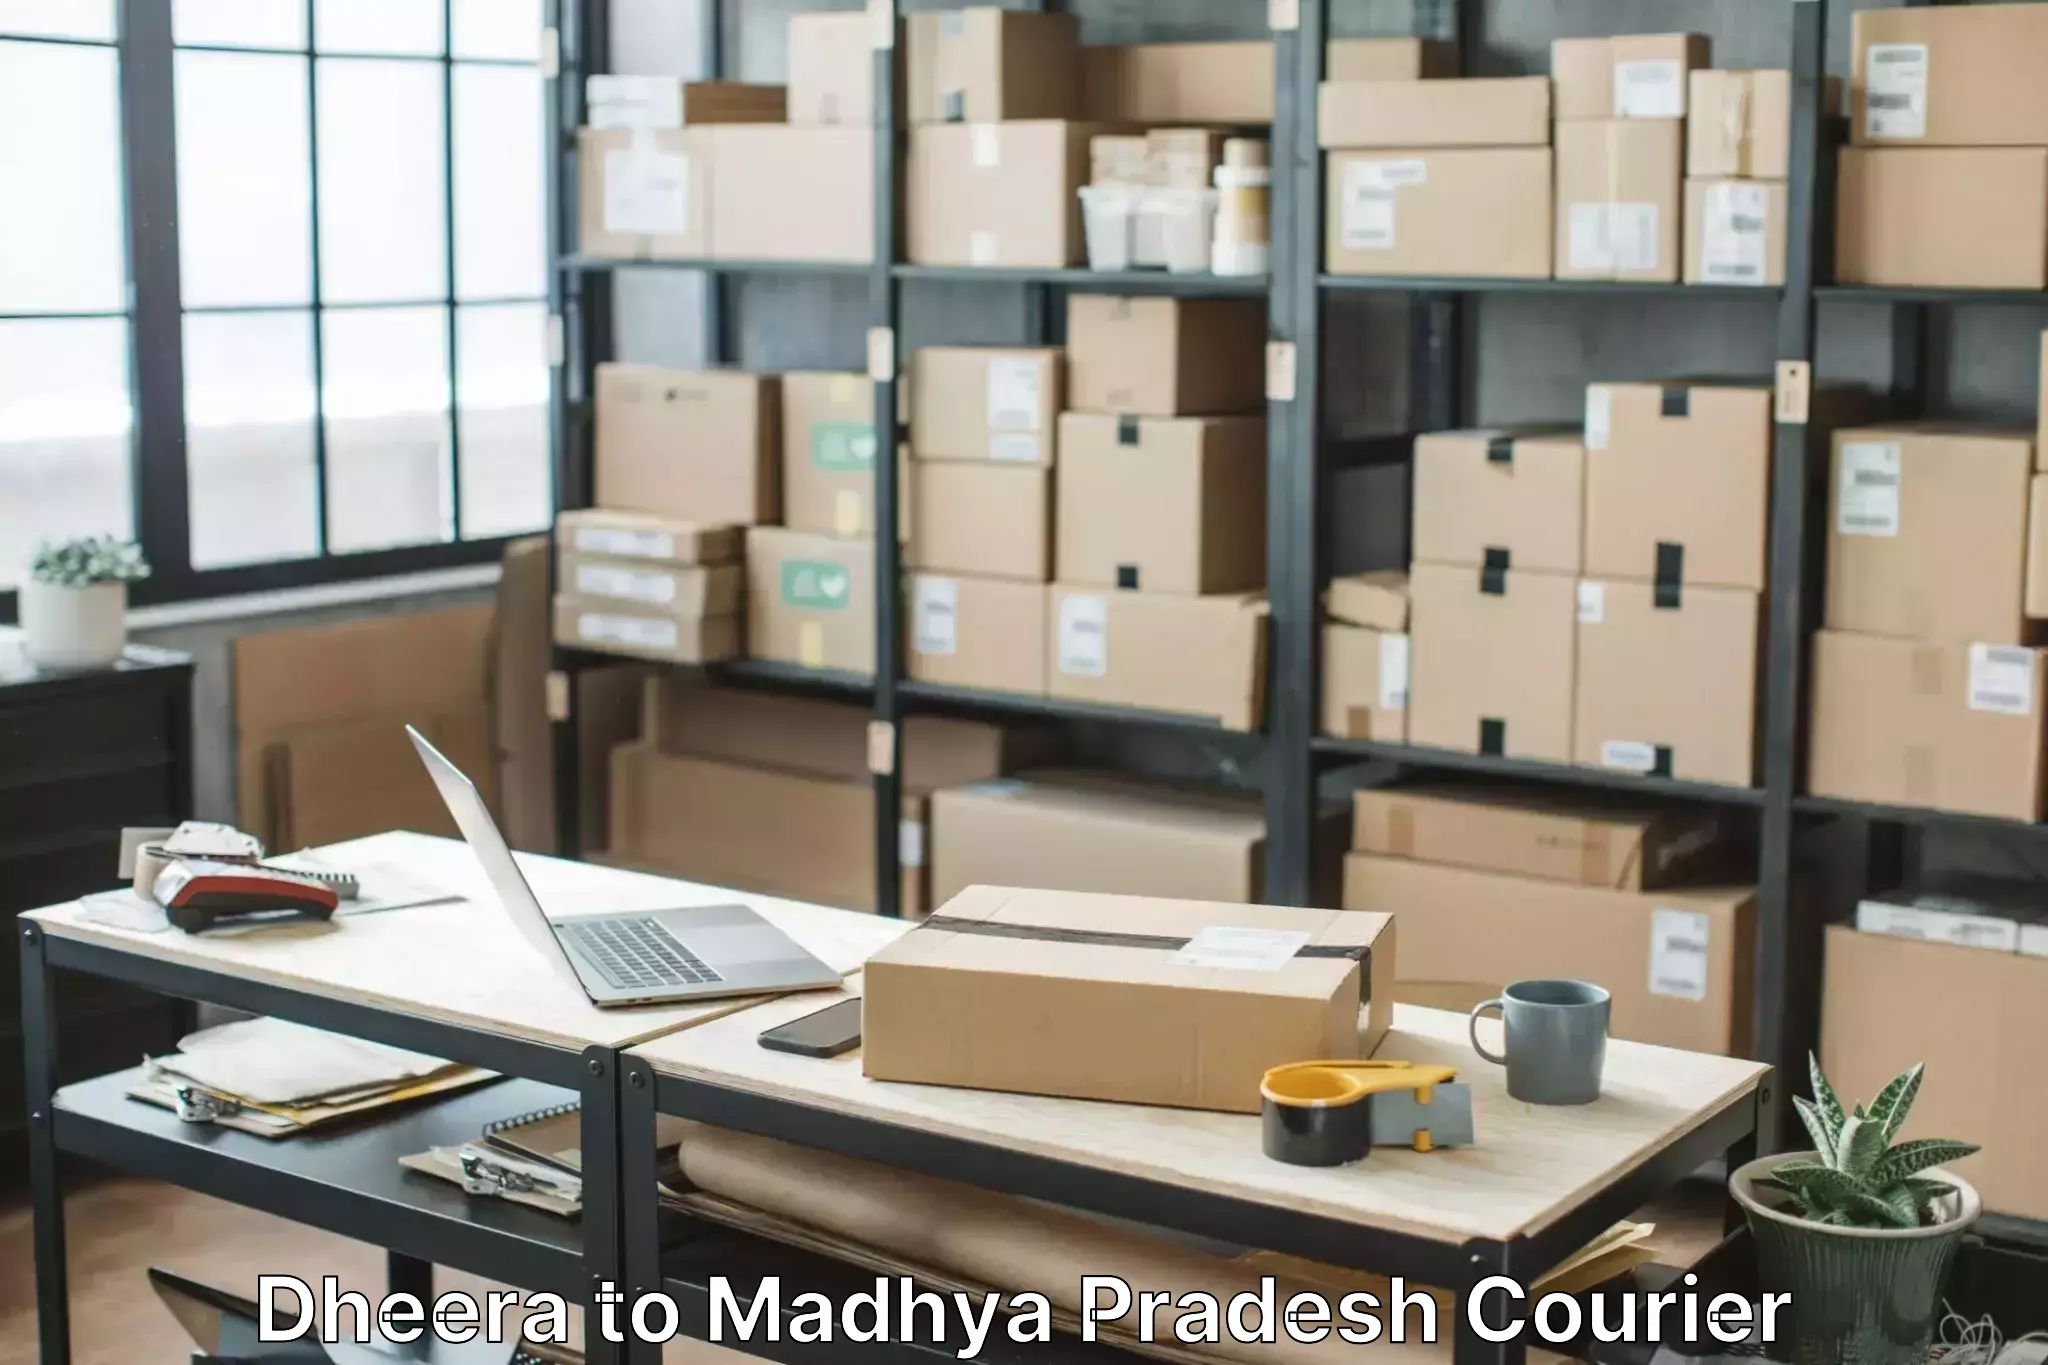 Furniture relocation experts Dheera to Madhya Pradesh